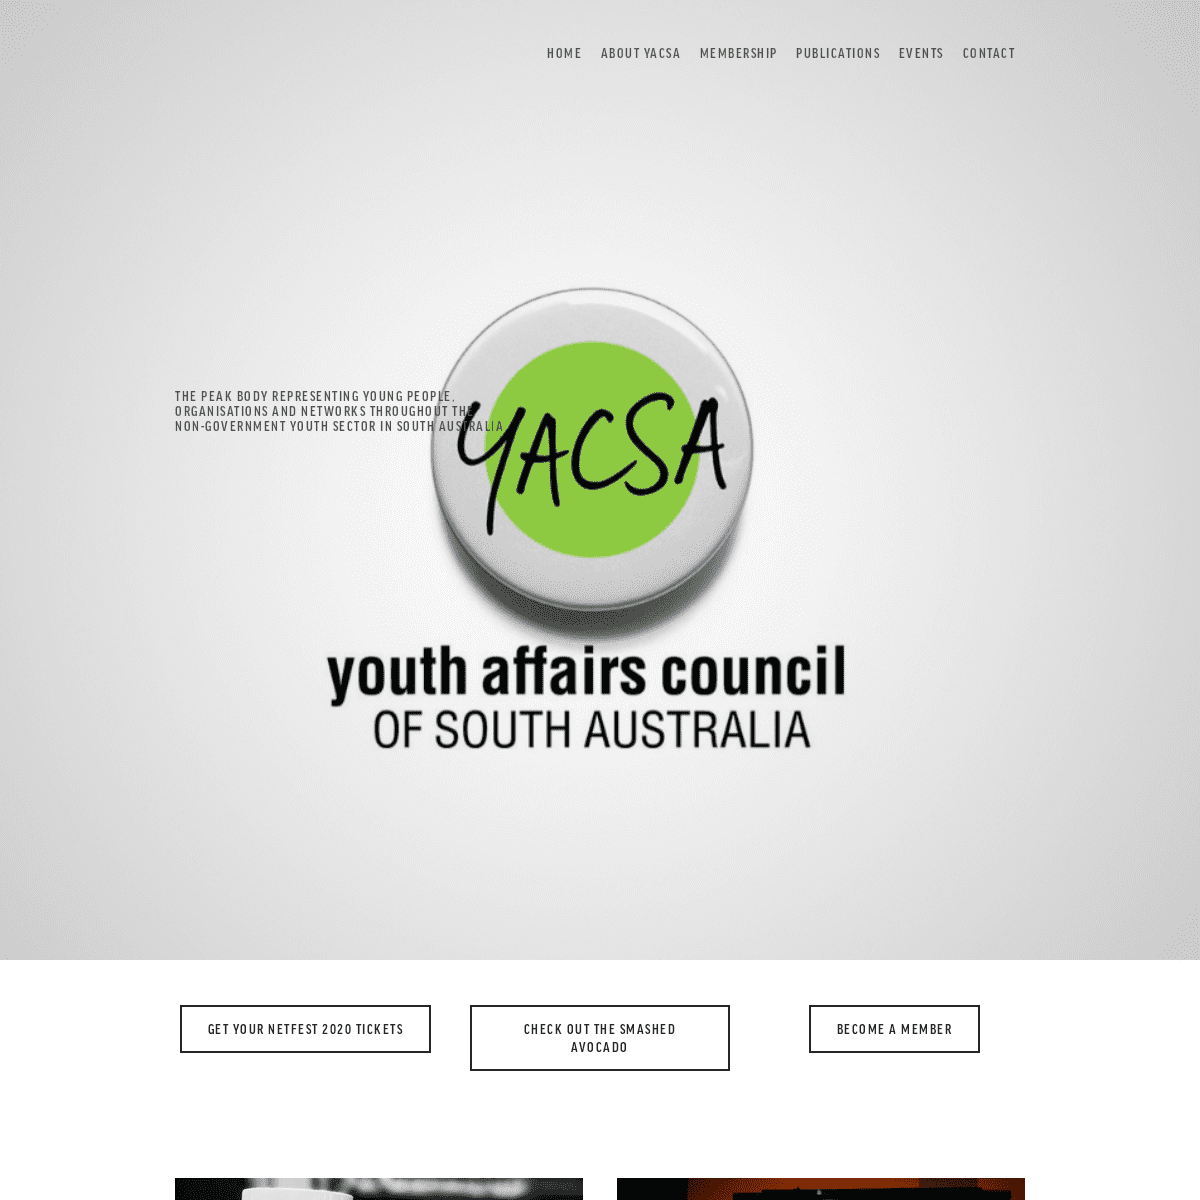 A complete backup of yacsa.com.au